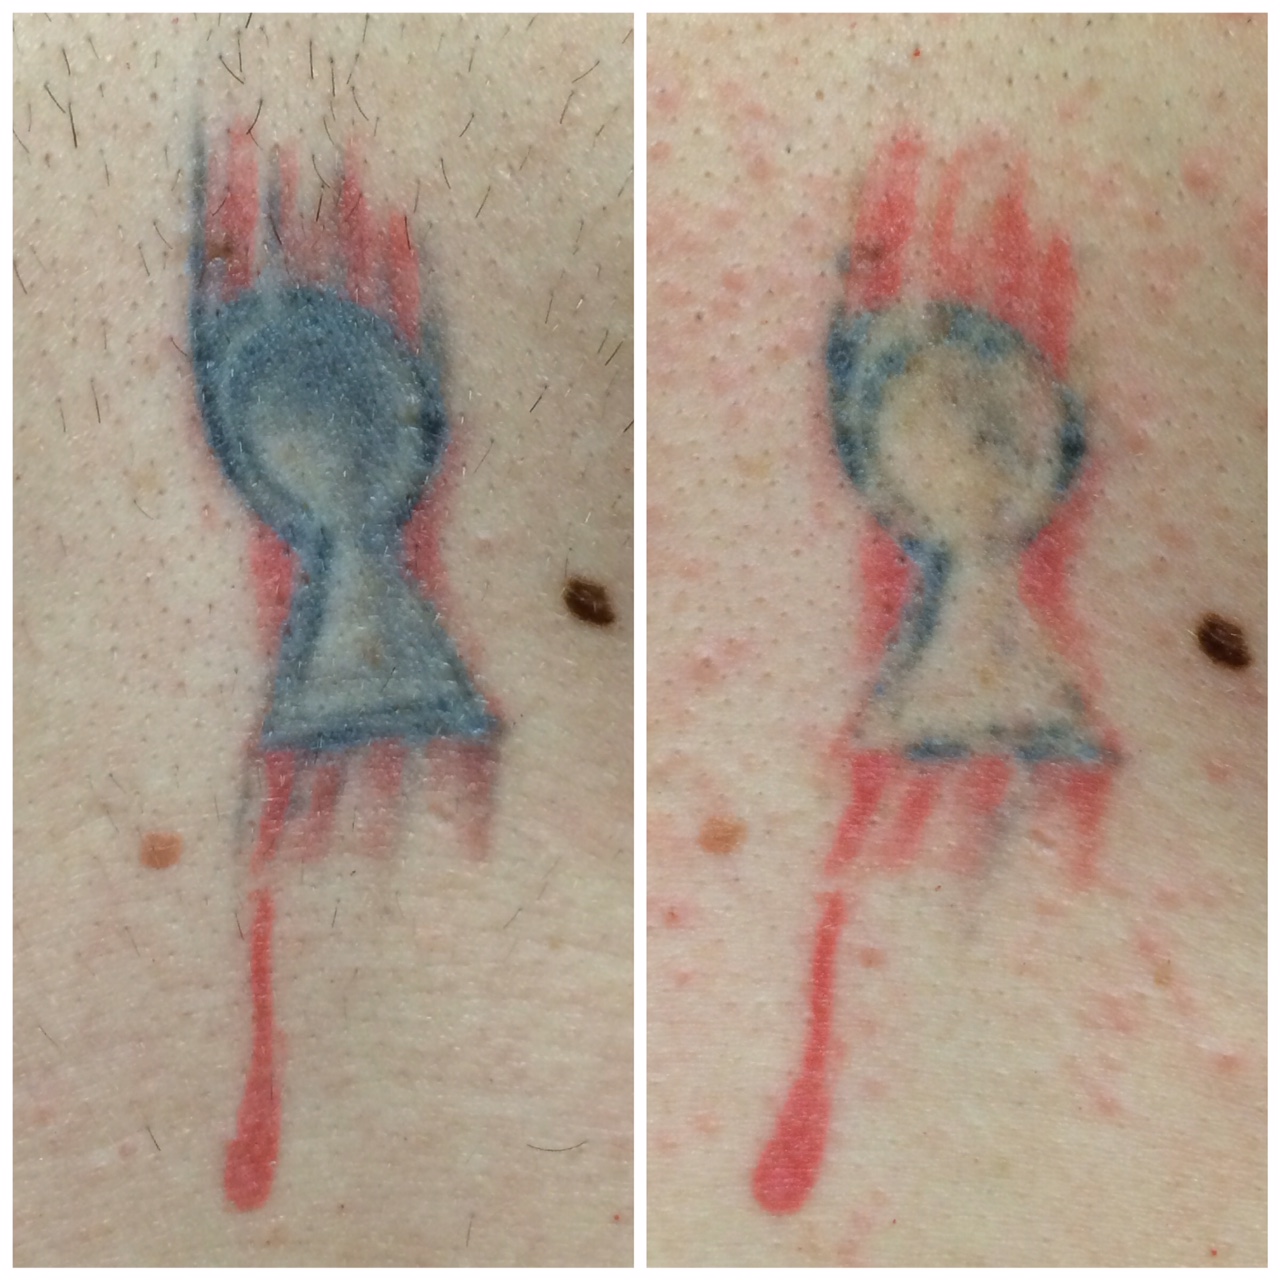 PicoSure Tattoo 1 Treatment - DK